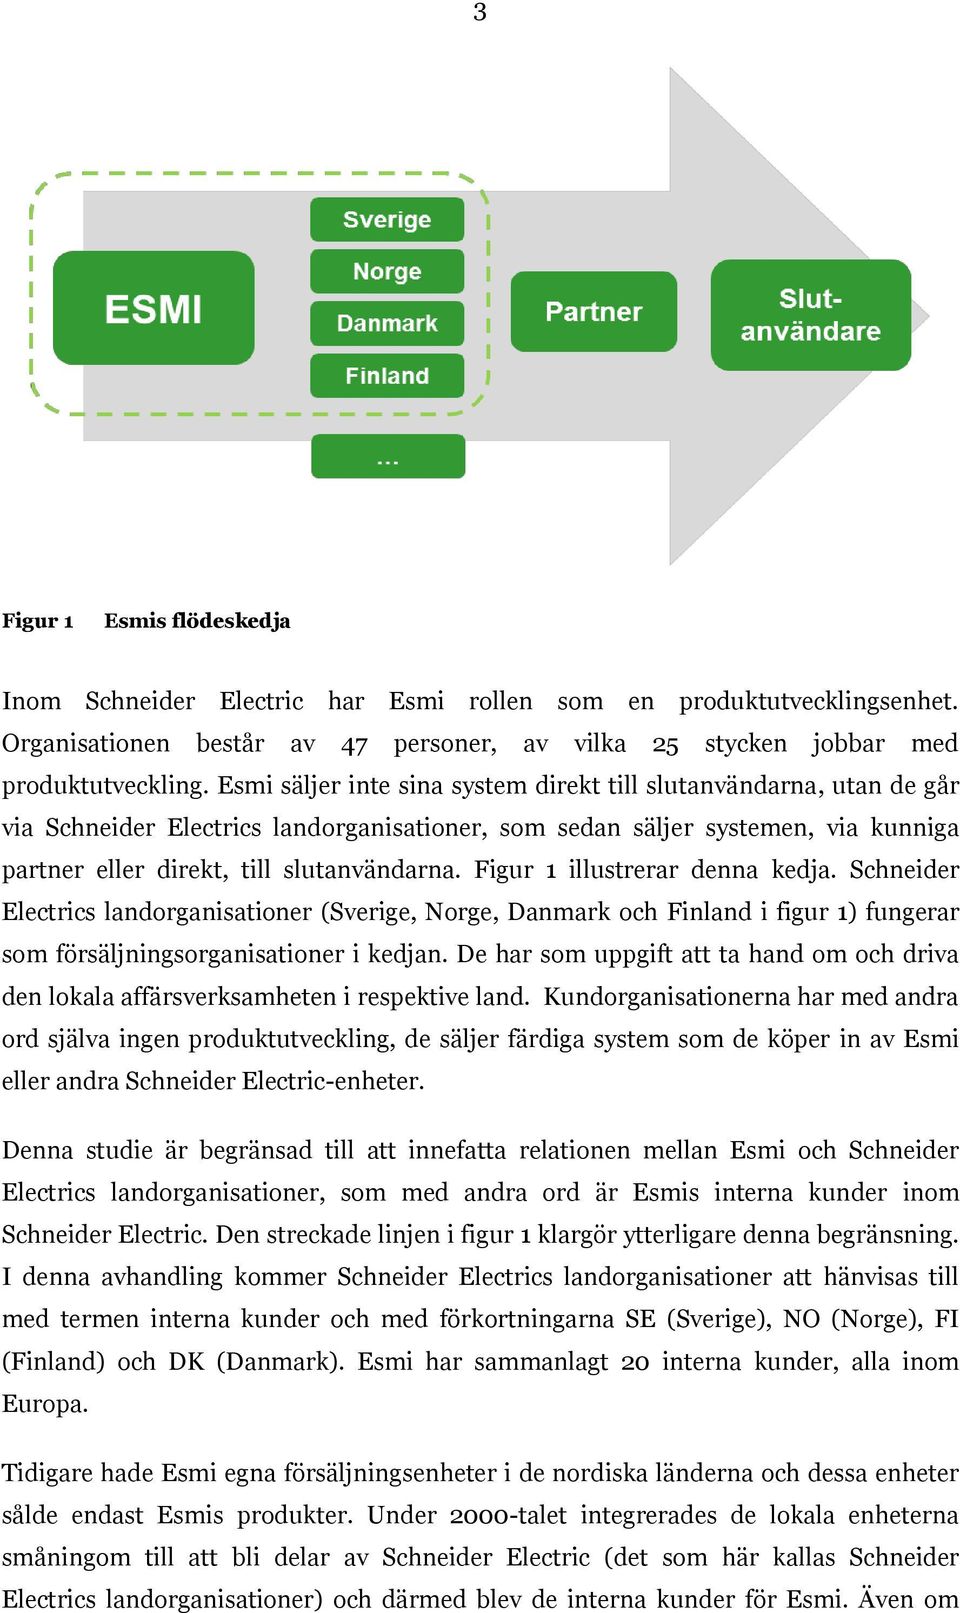 Figur 1 illustrerar denna kedja. Schneider Electrics landorganisationer (Sverige, Norge, Danmark och Finland i figur 1) fungerar som försäljningsorganisationer i kedjan.